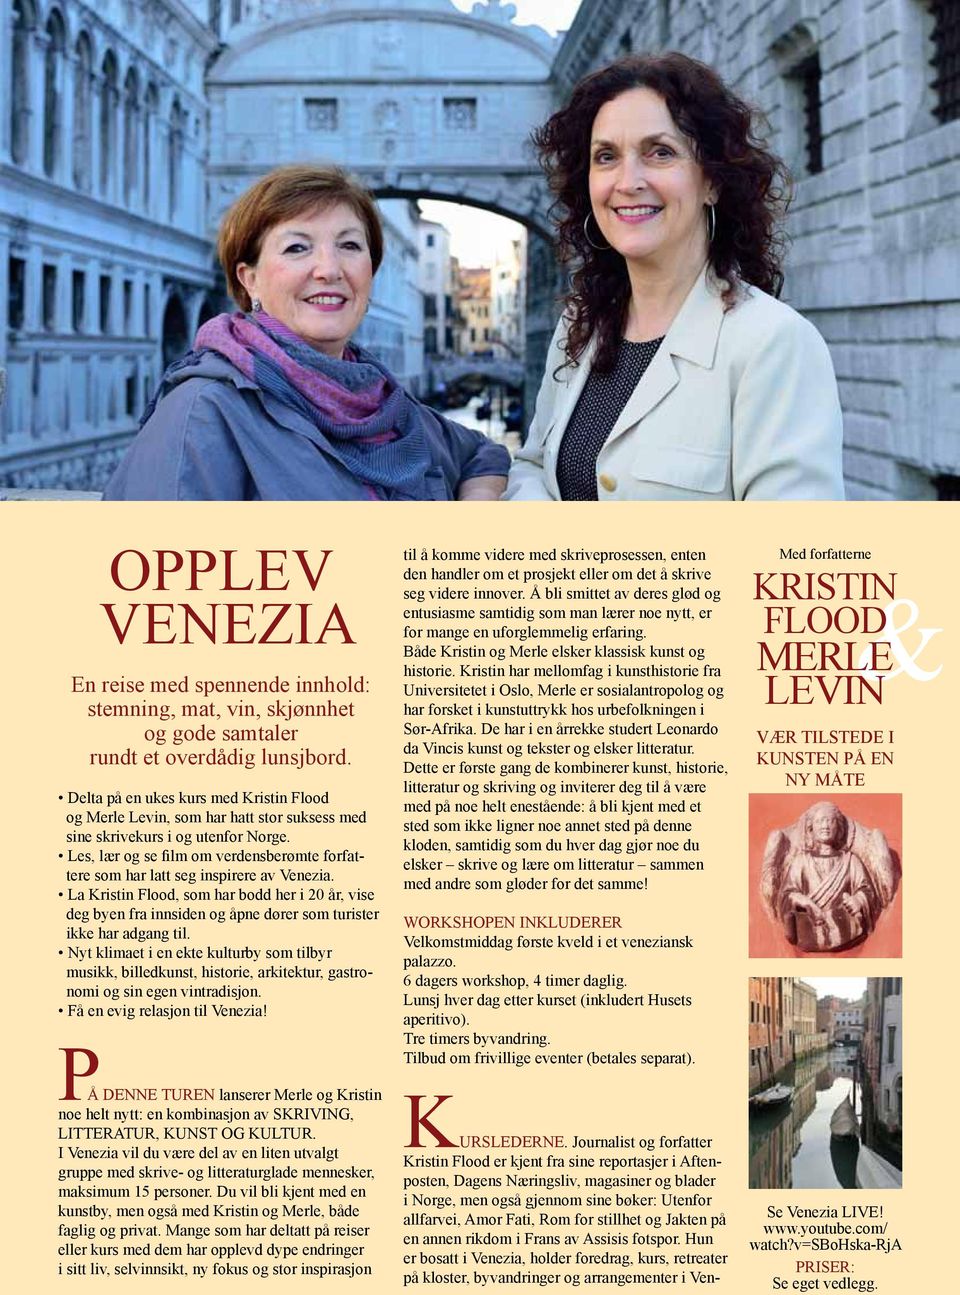 Les, lær og se film om verdensberømte forfattere som har latt seg inspirere av Venezia.